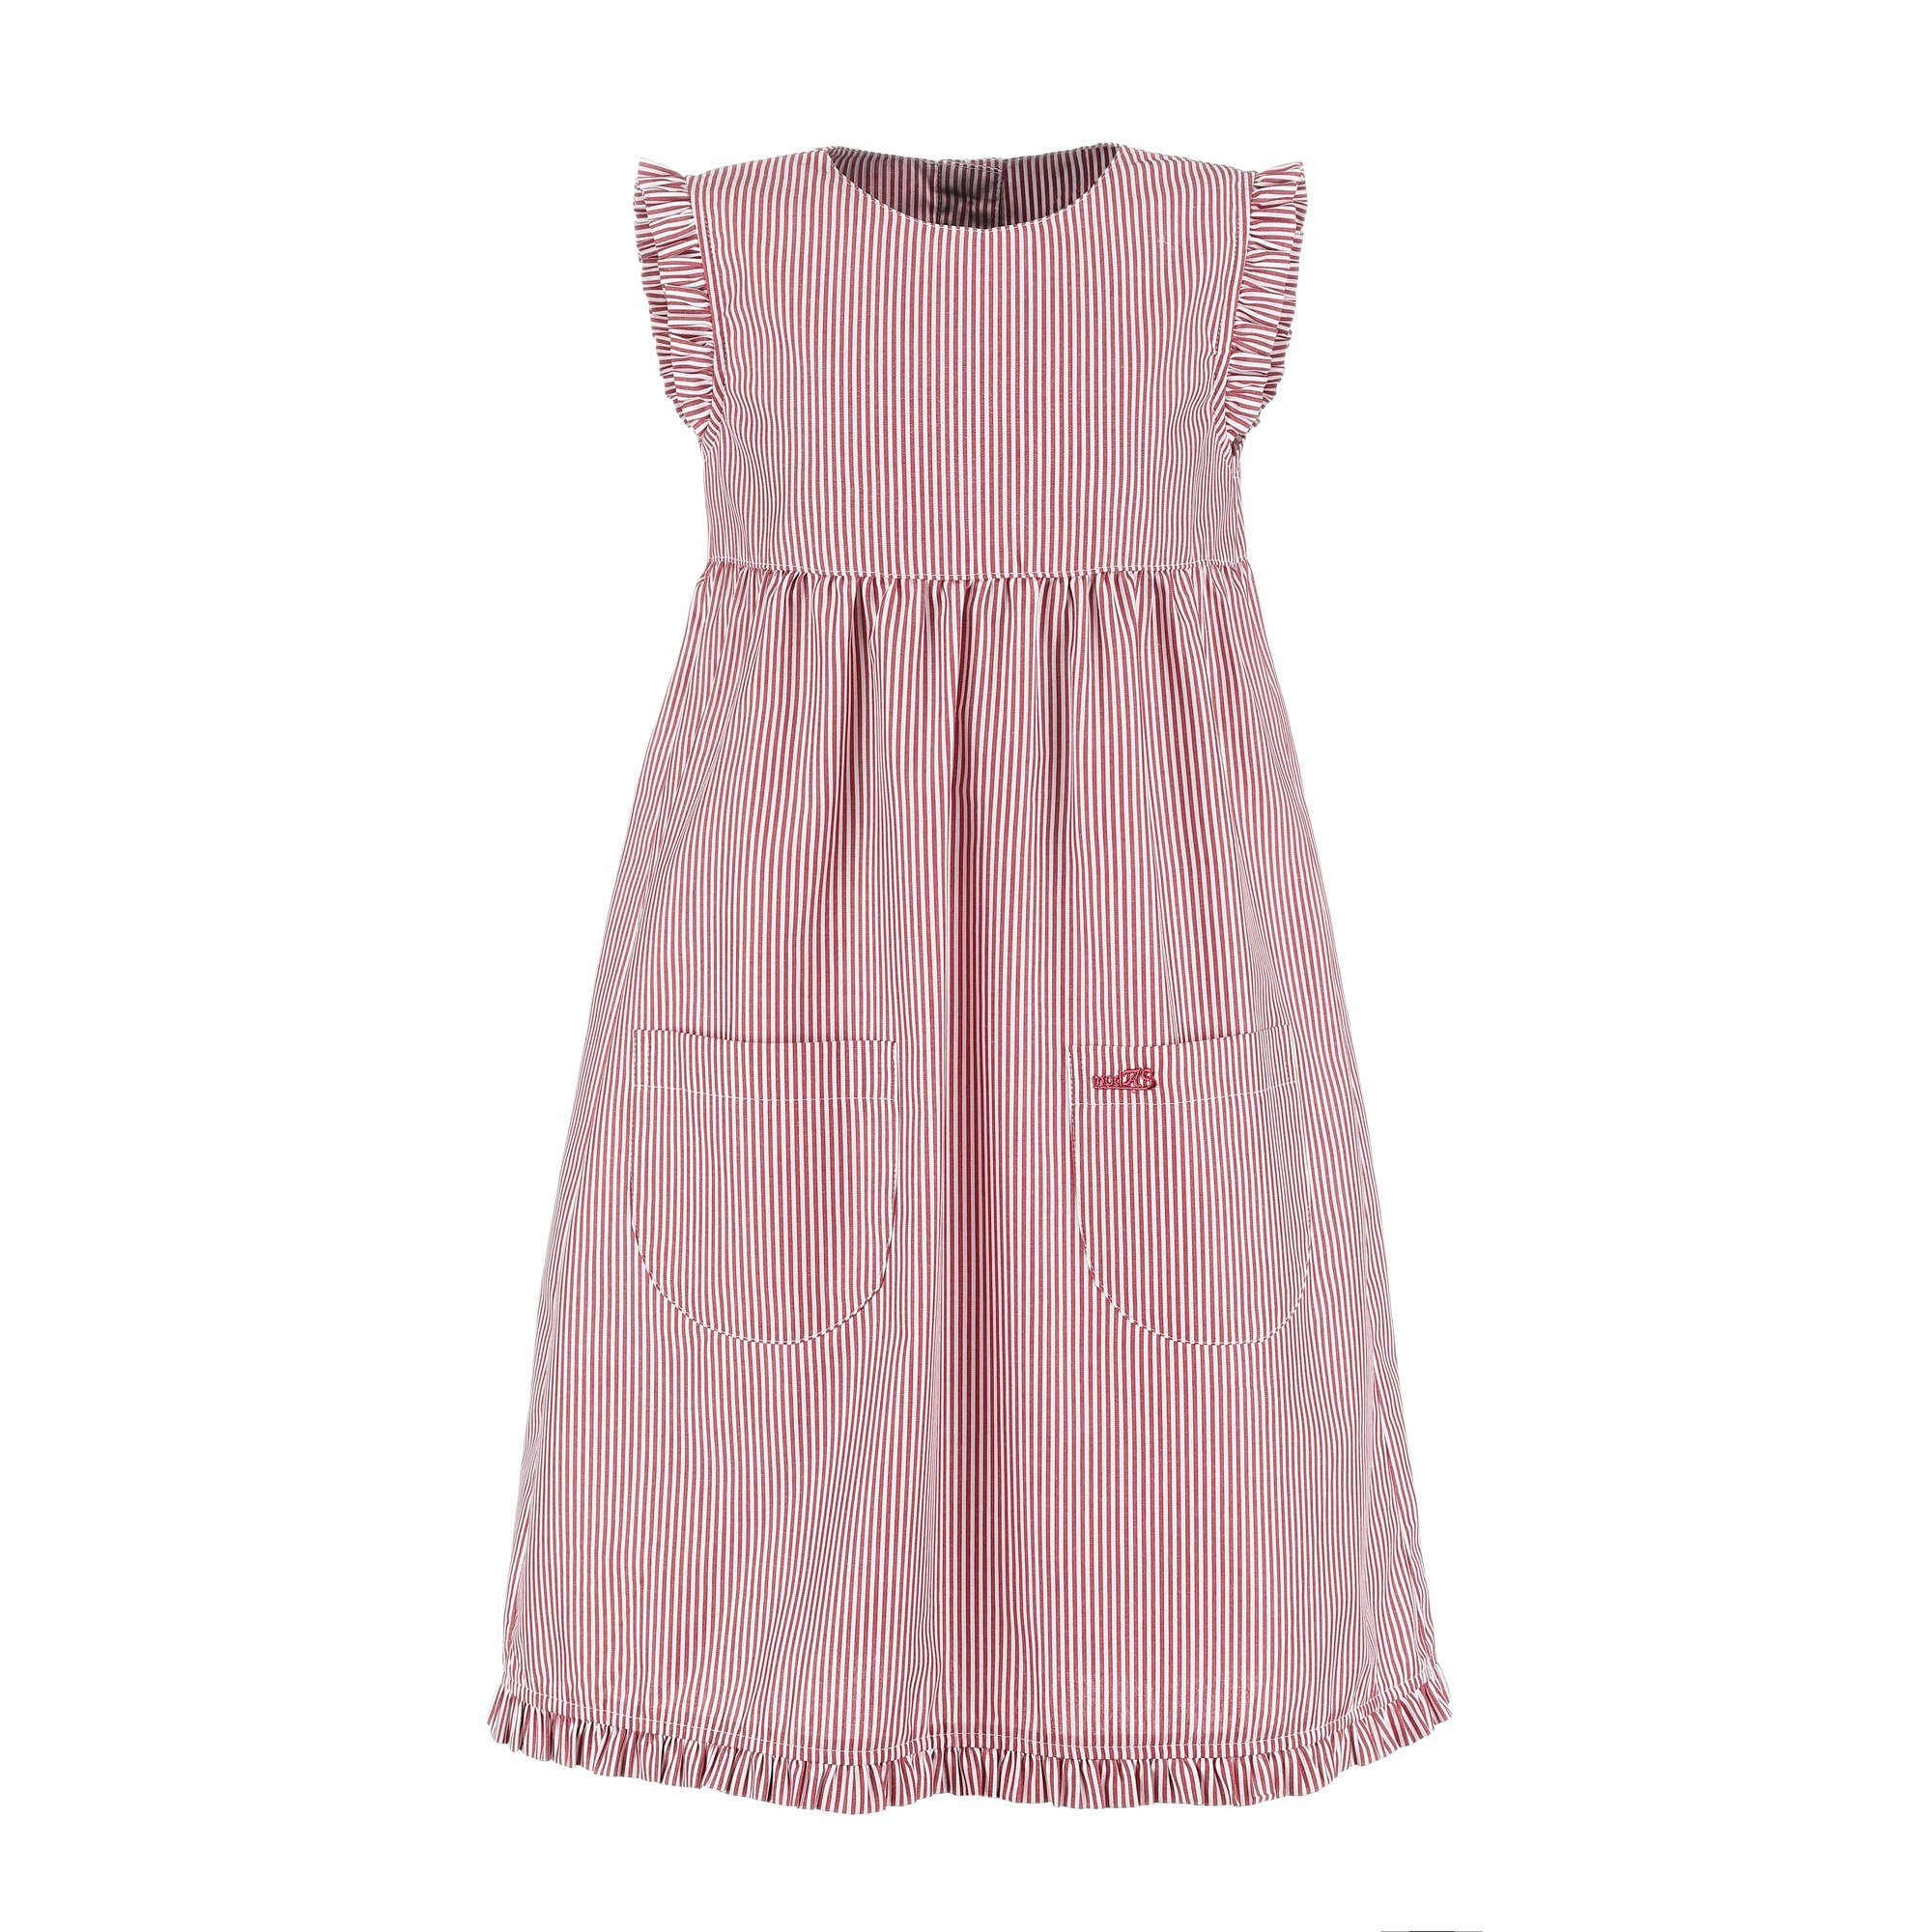 mit - mit rot/weiß gestreift Kleid (023) Kinder Streifen Mädchenkleid gestreift modAS Sommerkleid Rüschen